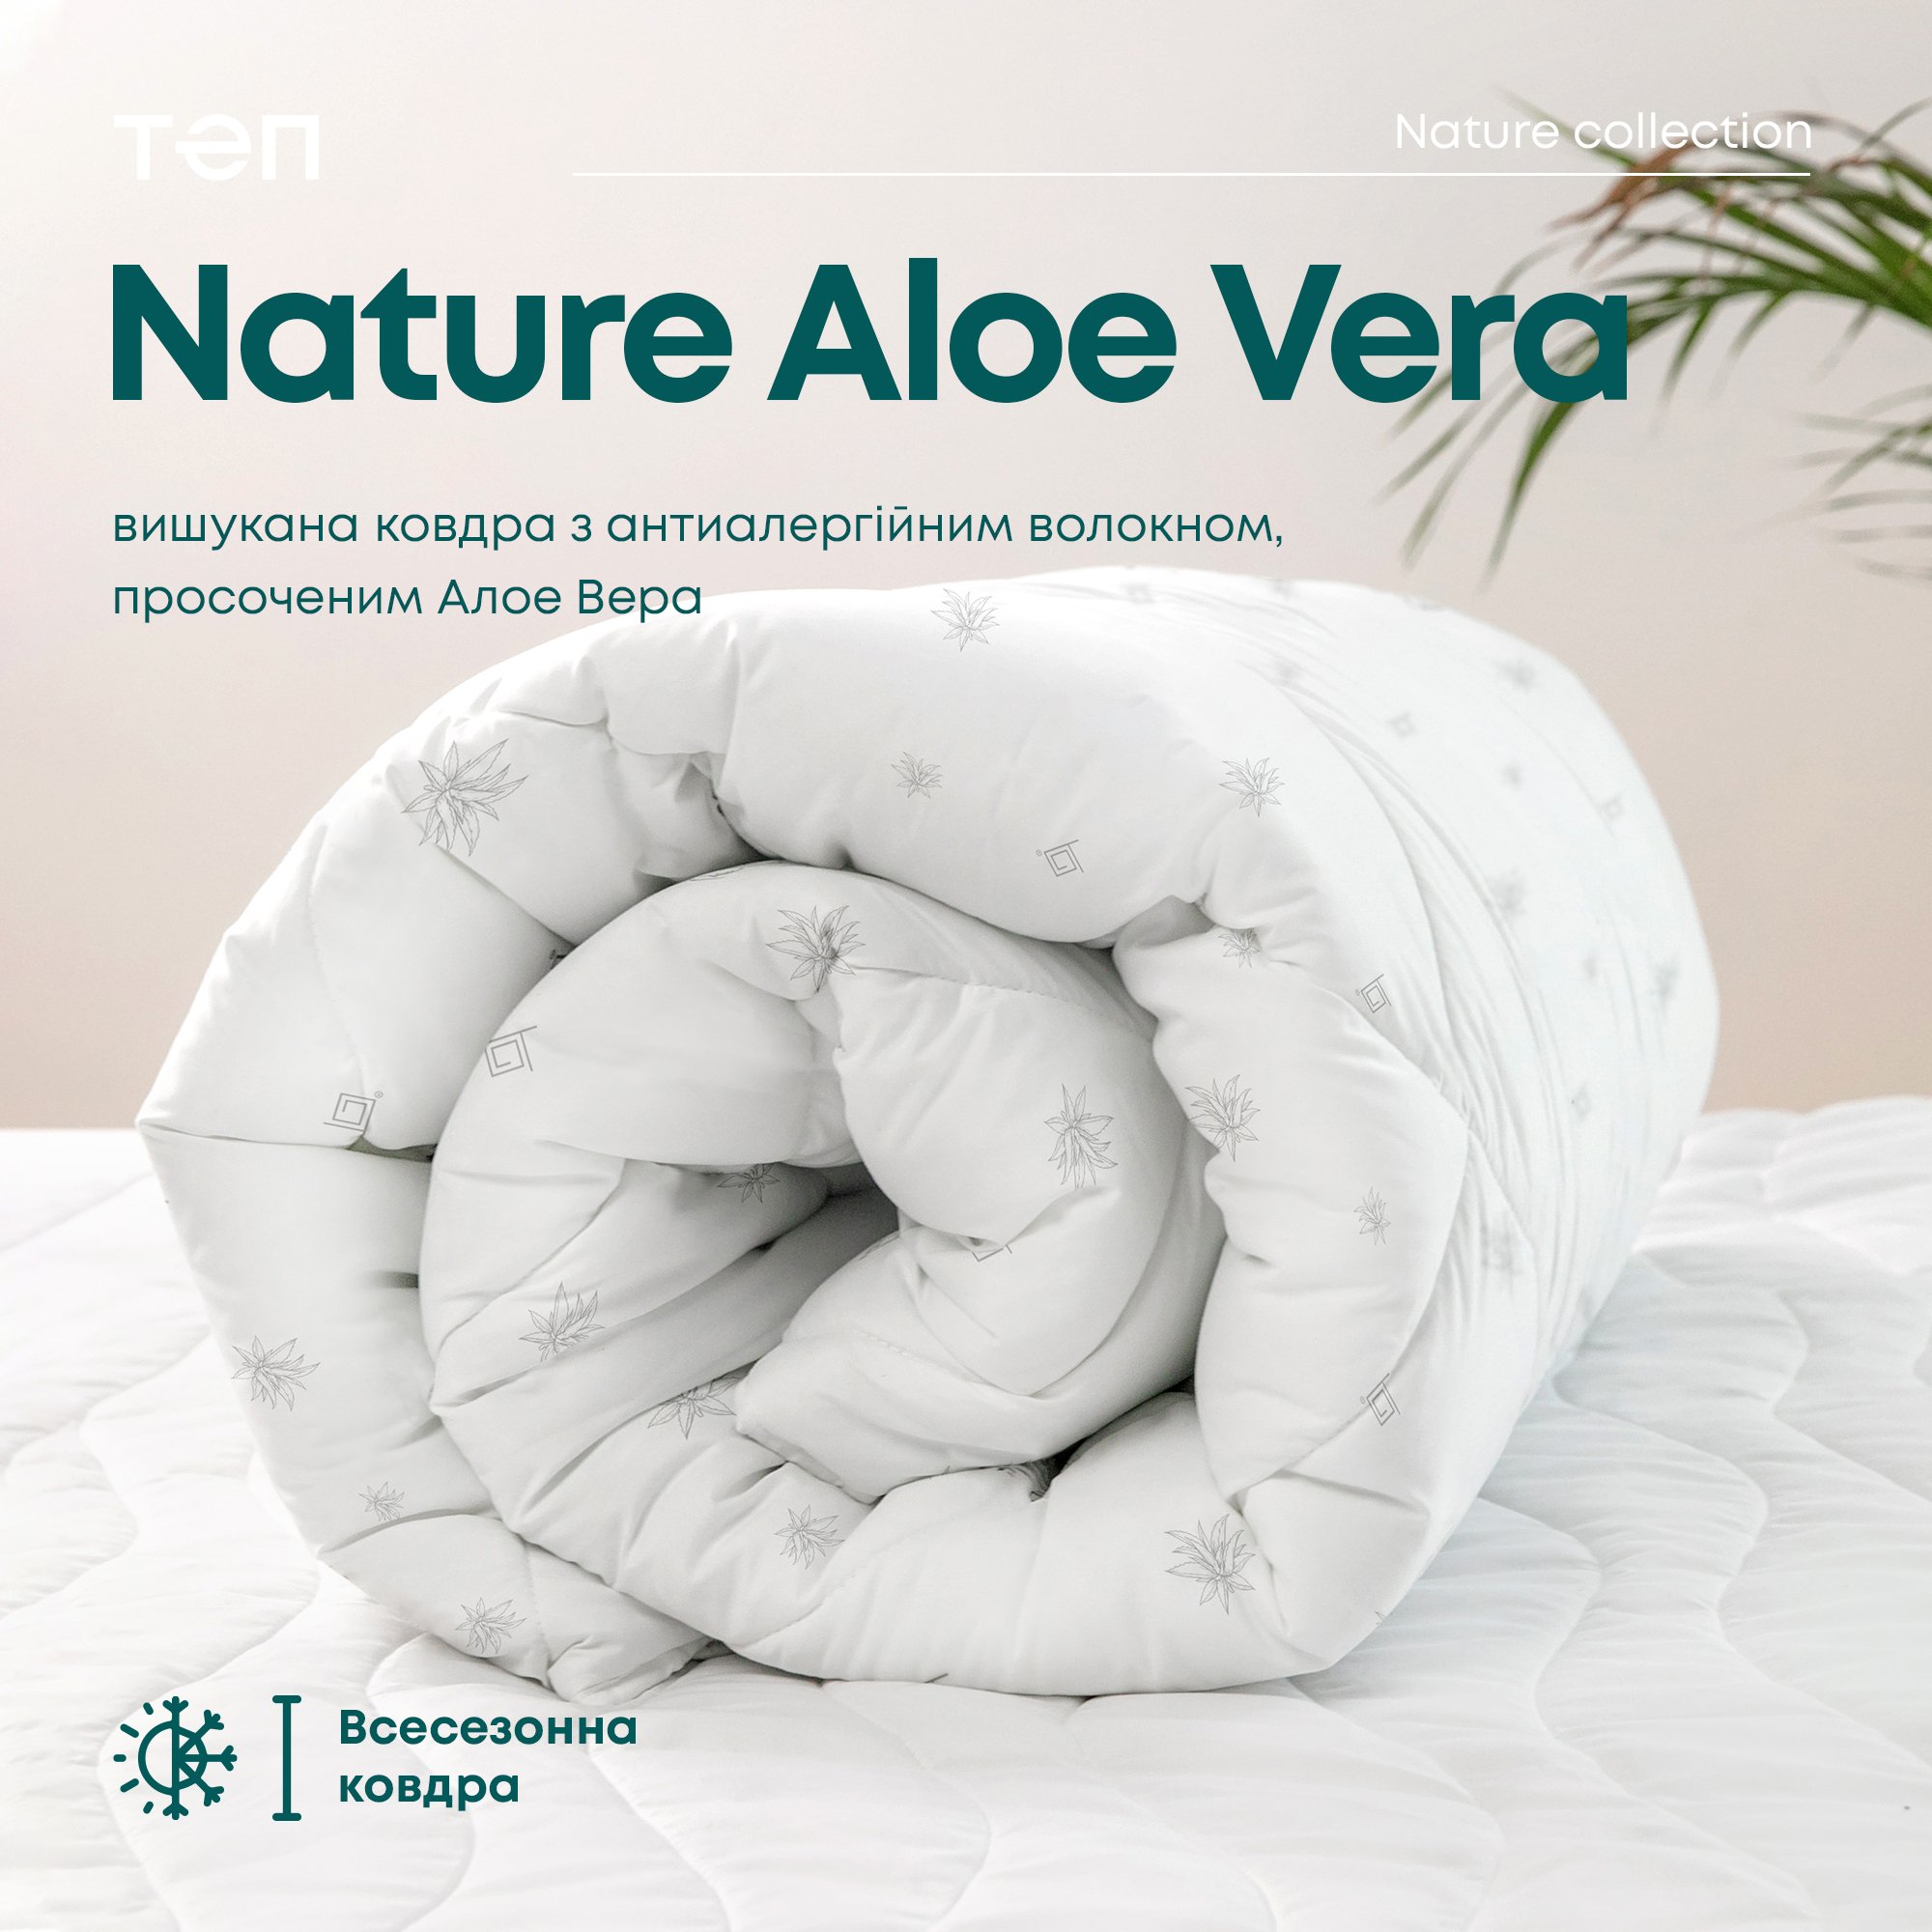 Одеяло ТЕП Membrana Print Aloe Vera Природа 180x210 белое (1-02572_00000) - фото 10